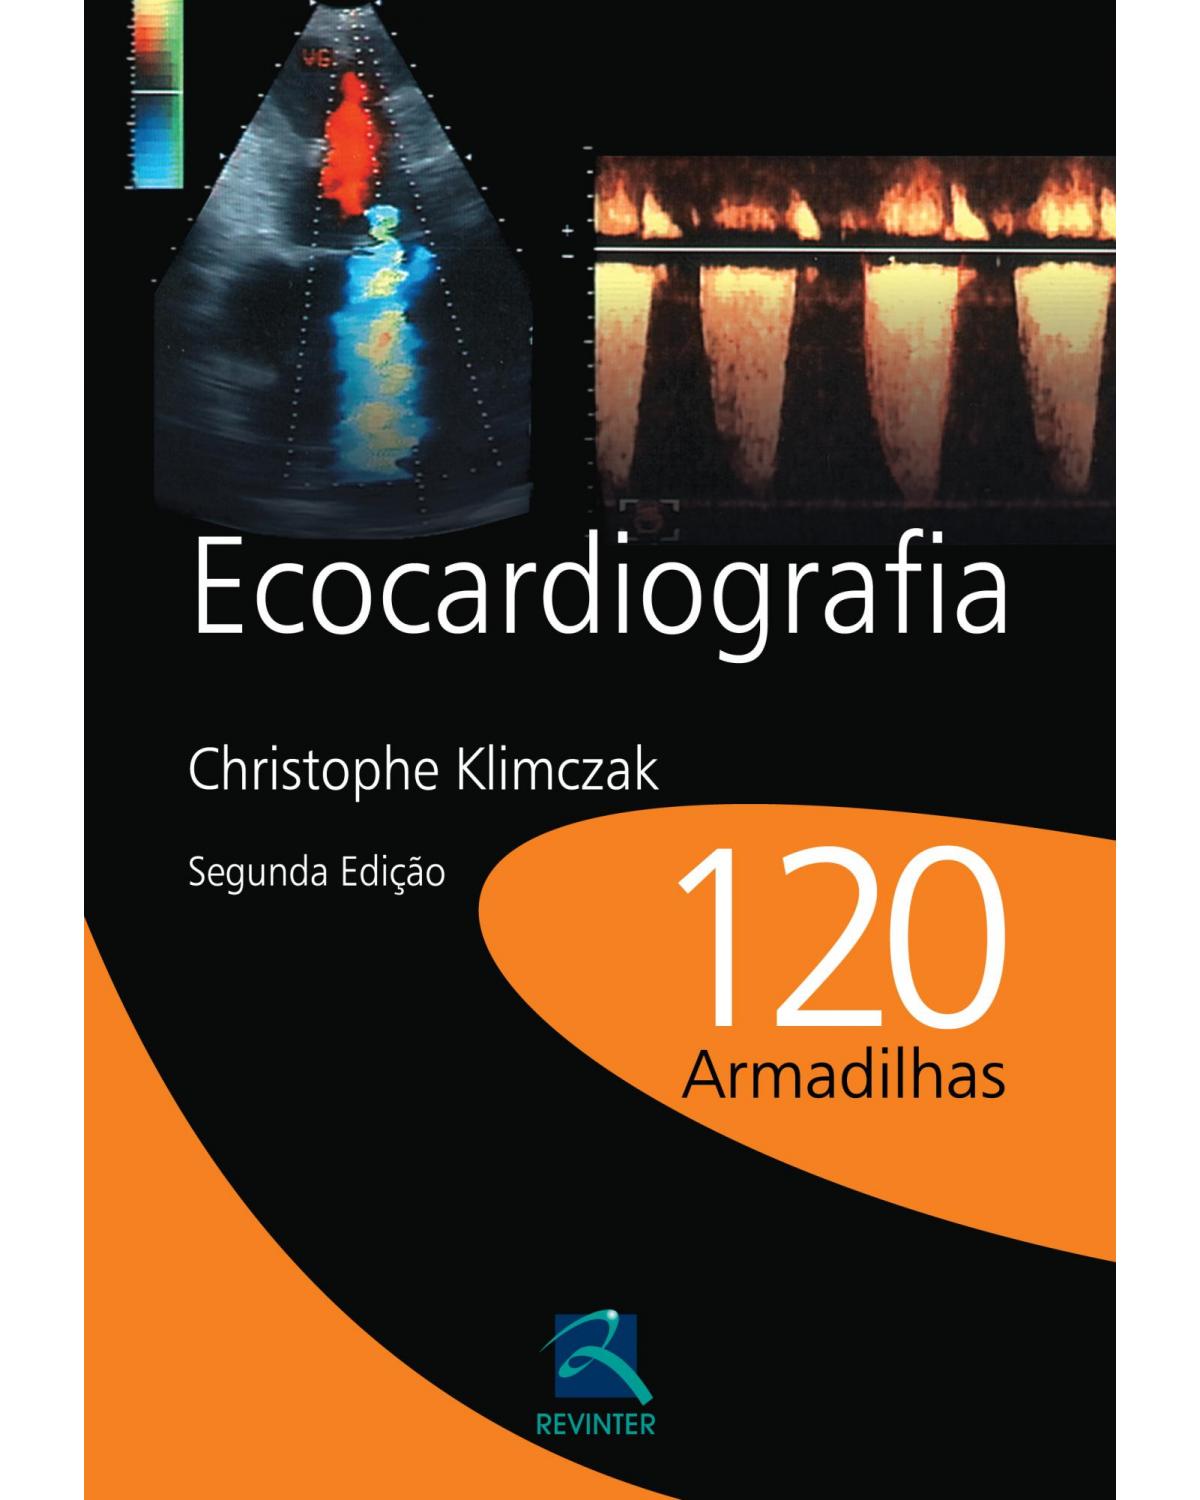 Ecocardiografia - 120 armadilhas - 2ª Edição | 2012